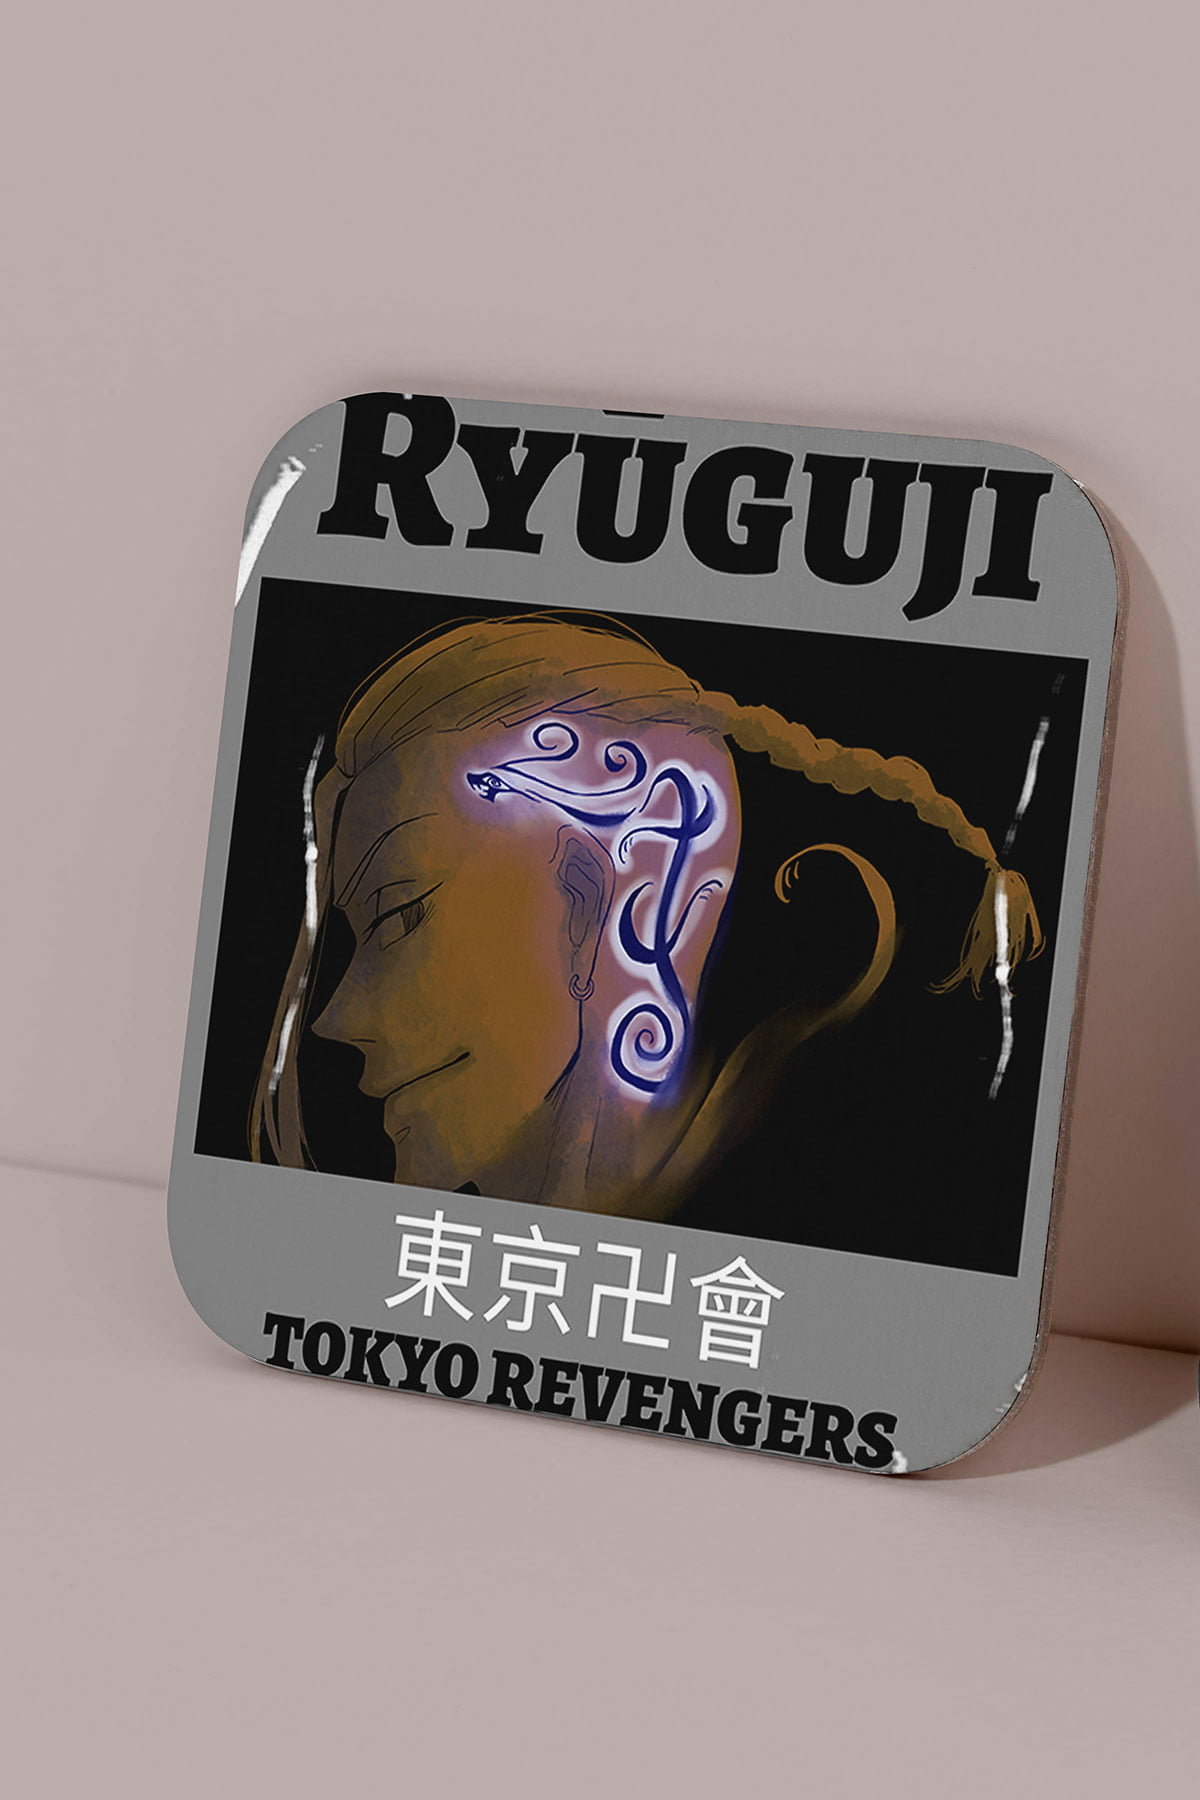 Tokyo revengers ryunguji - tokyo ravengers - ryuguji bardak altlığı - figurex